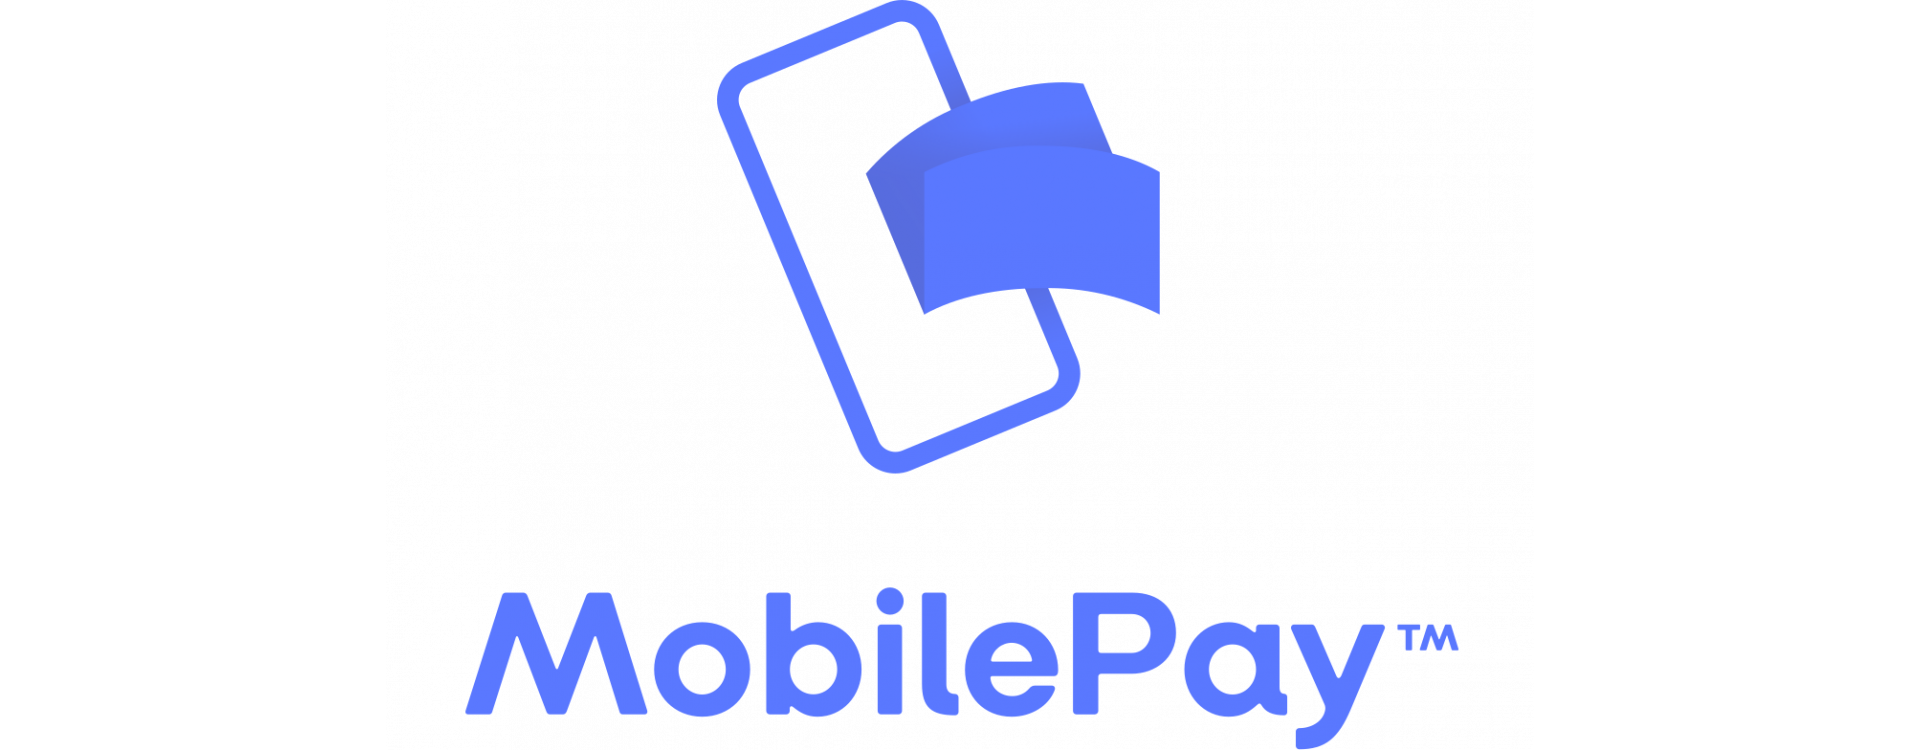 Nyt on mahdollista maksaa tilauksia MobilePayilla